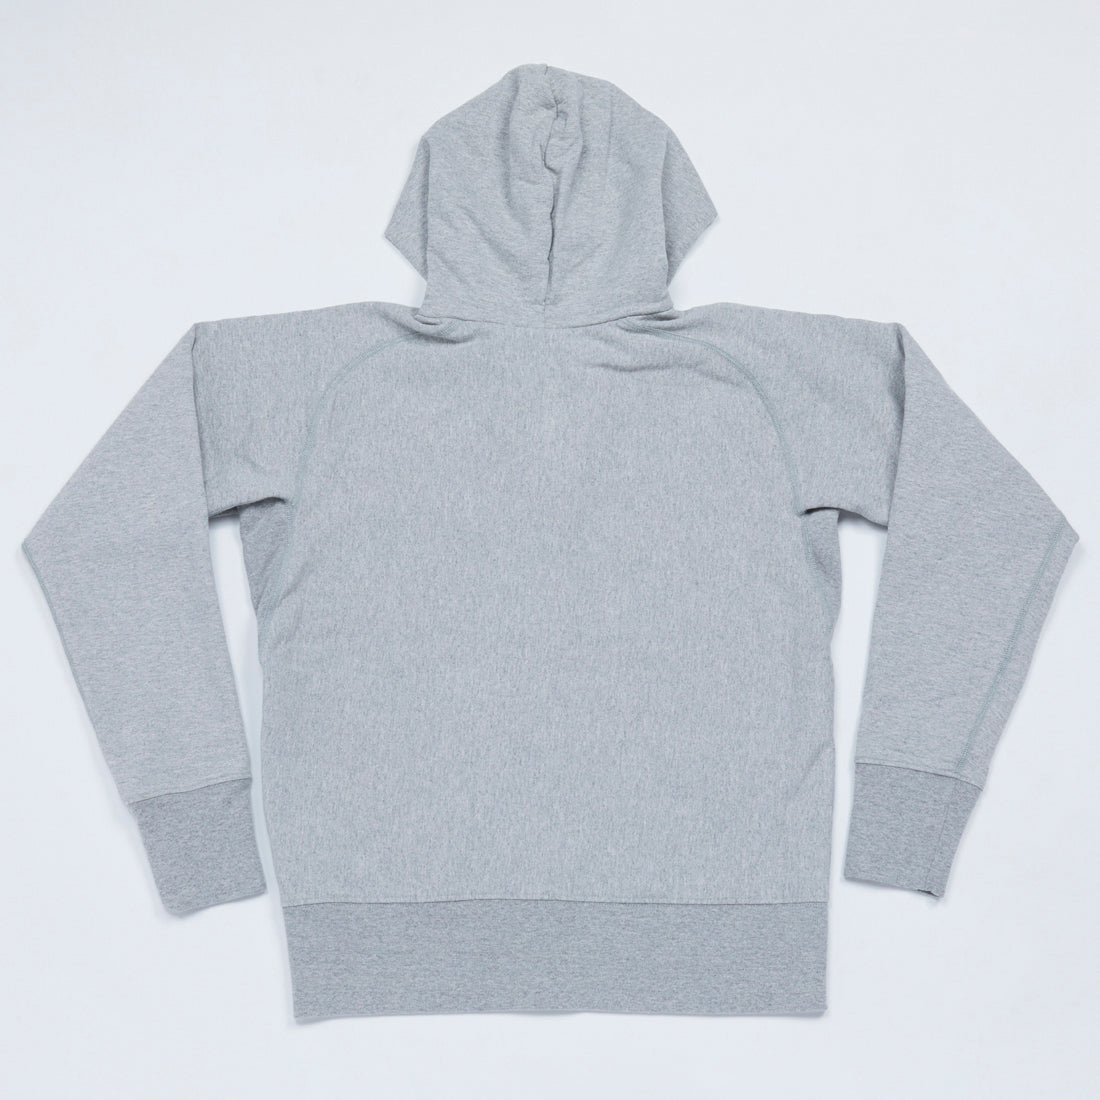 10 oz. Hooded Sweatshirt (Heather Gray)